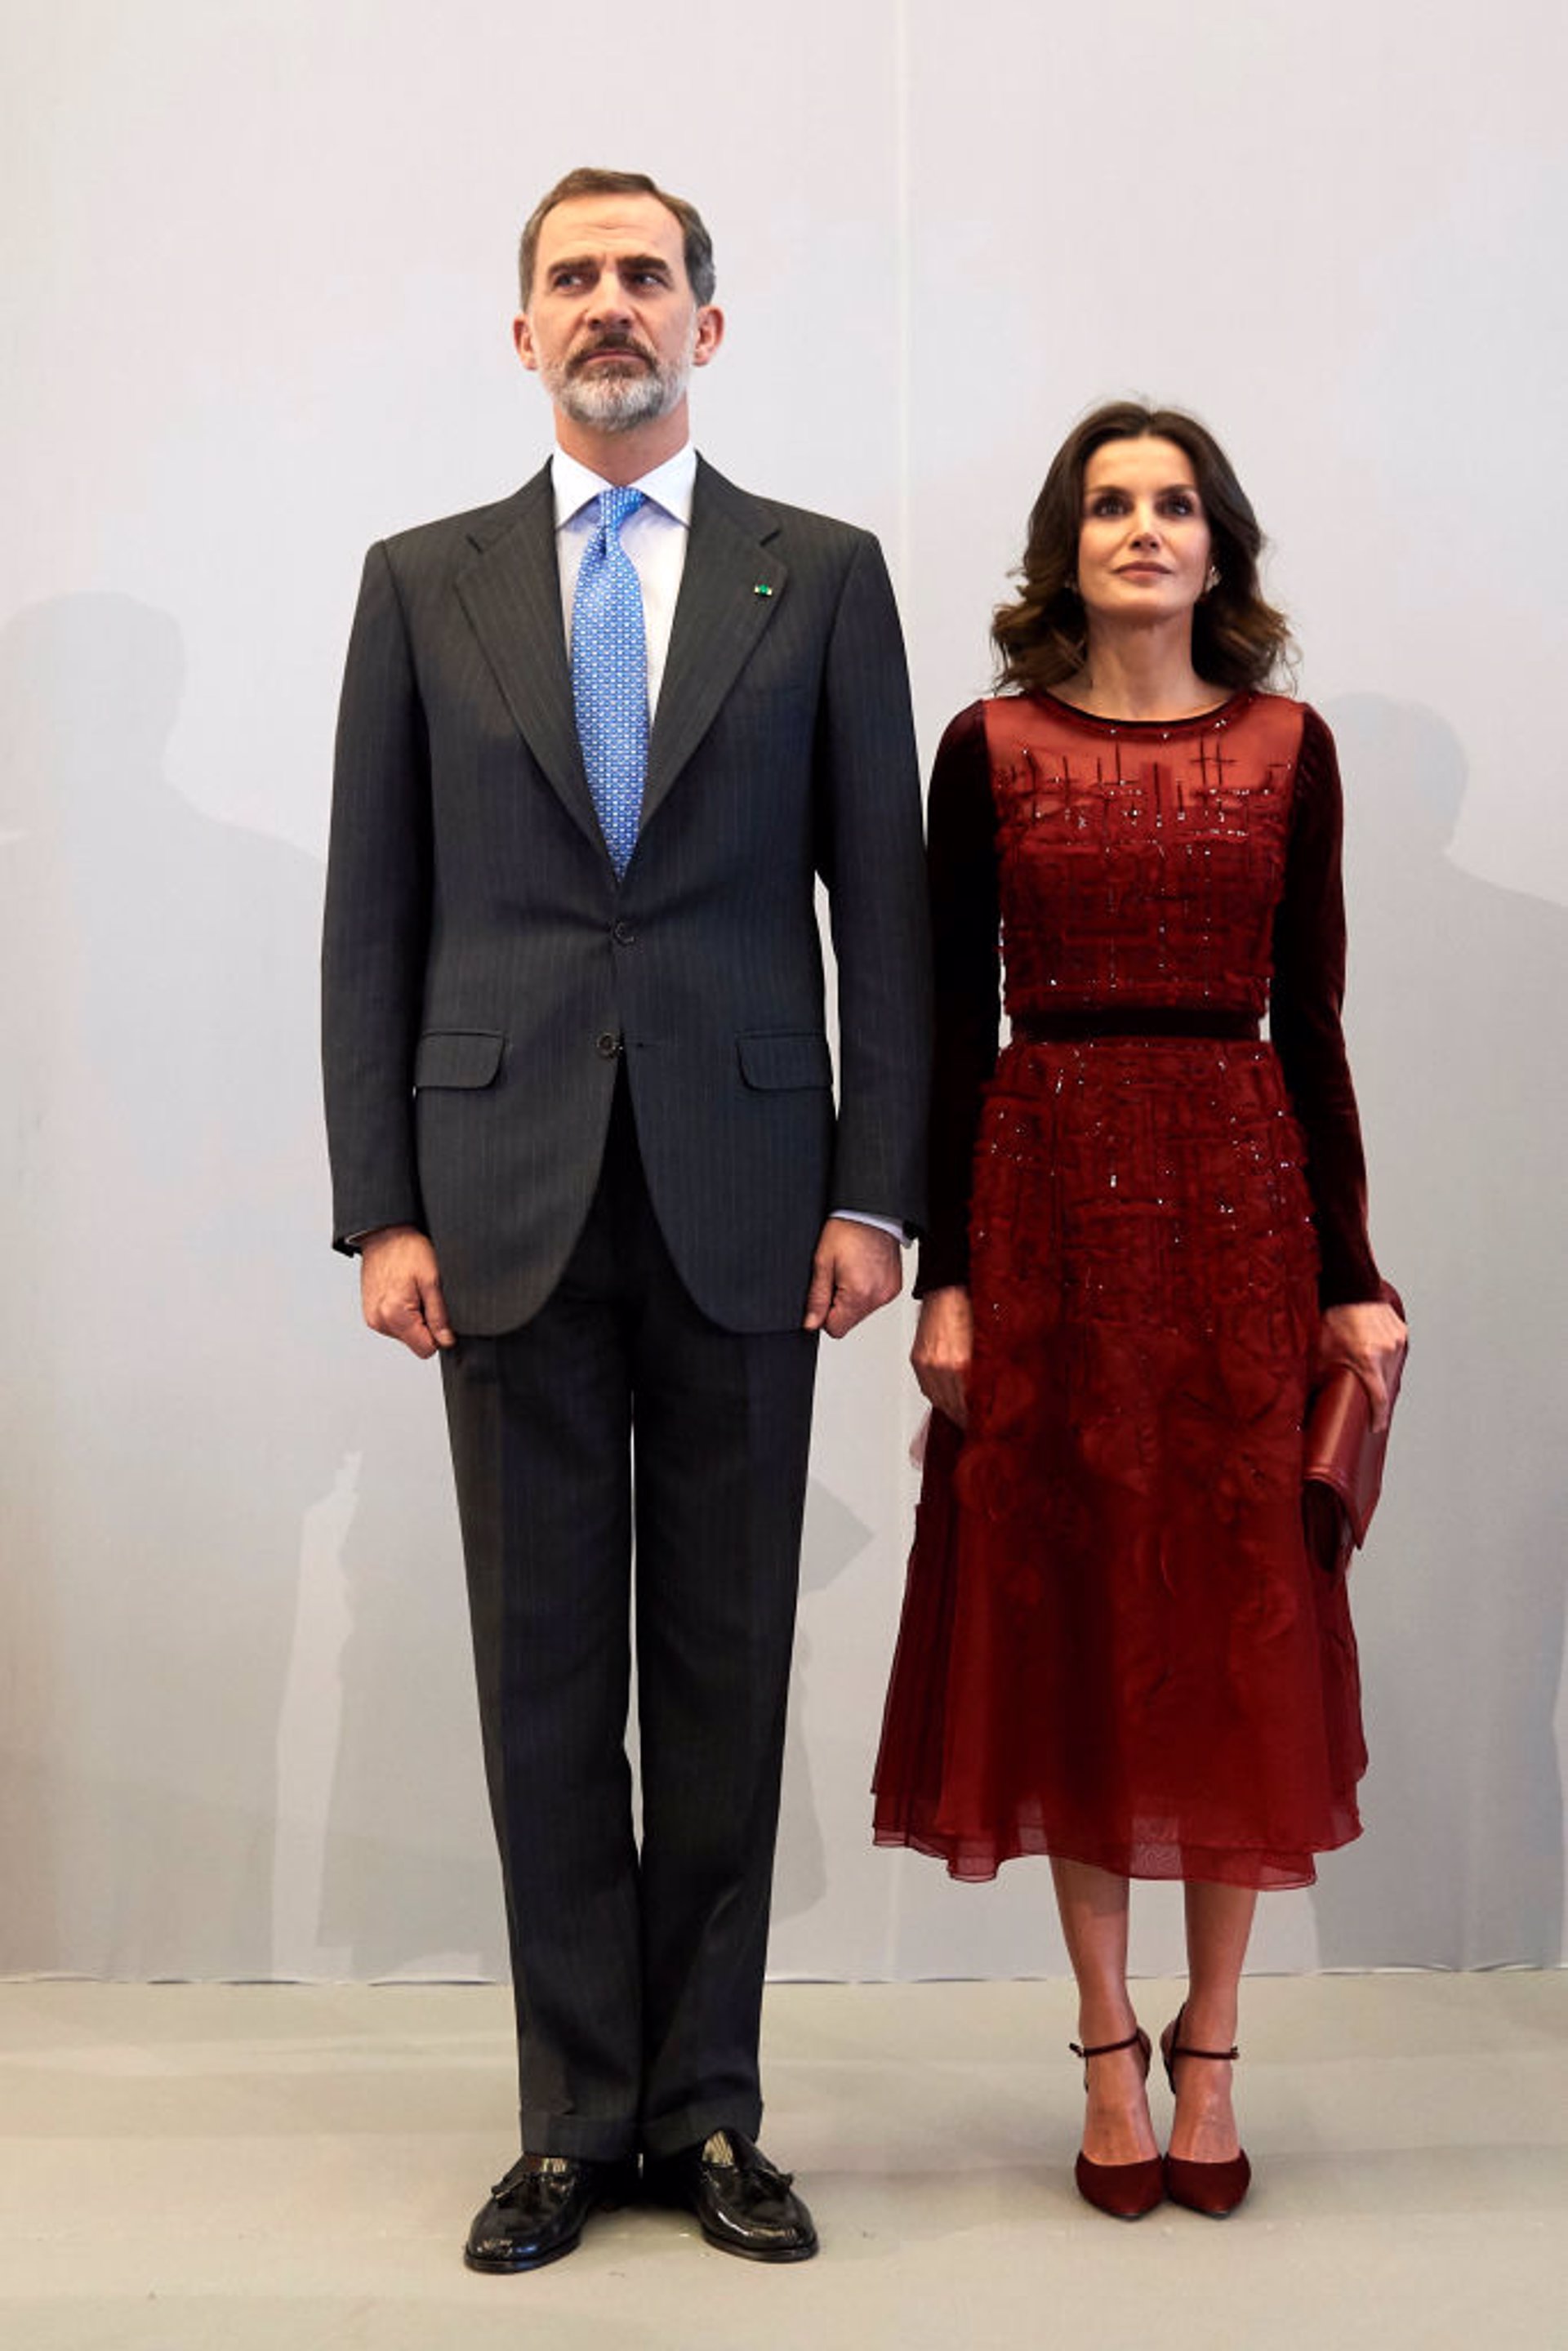 Letizia con el Rey Felipe VI y Hollande lució un vestido en rojo borgoña con mangas de terciopelo y falso escote